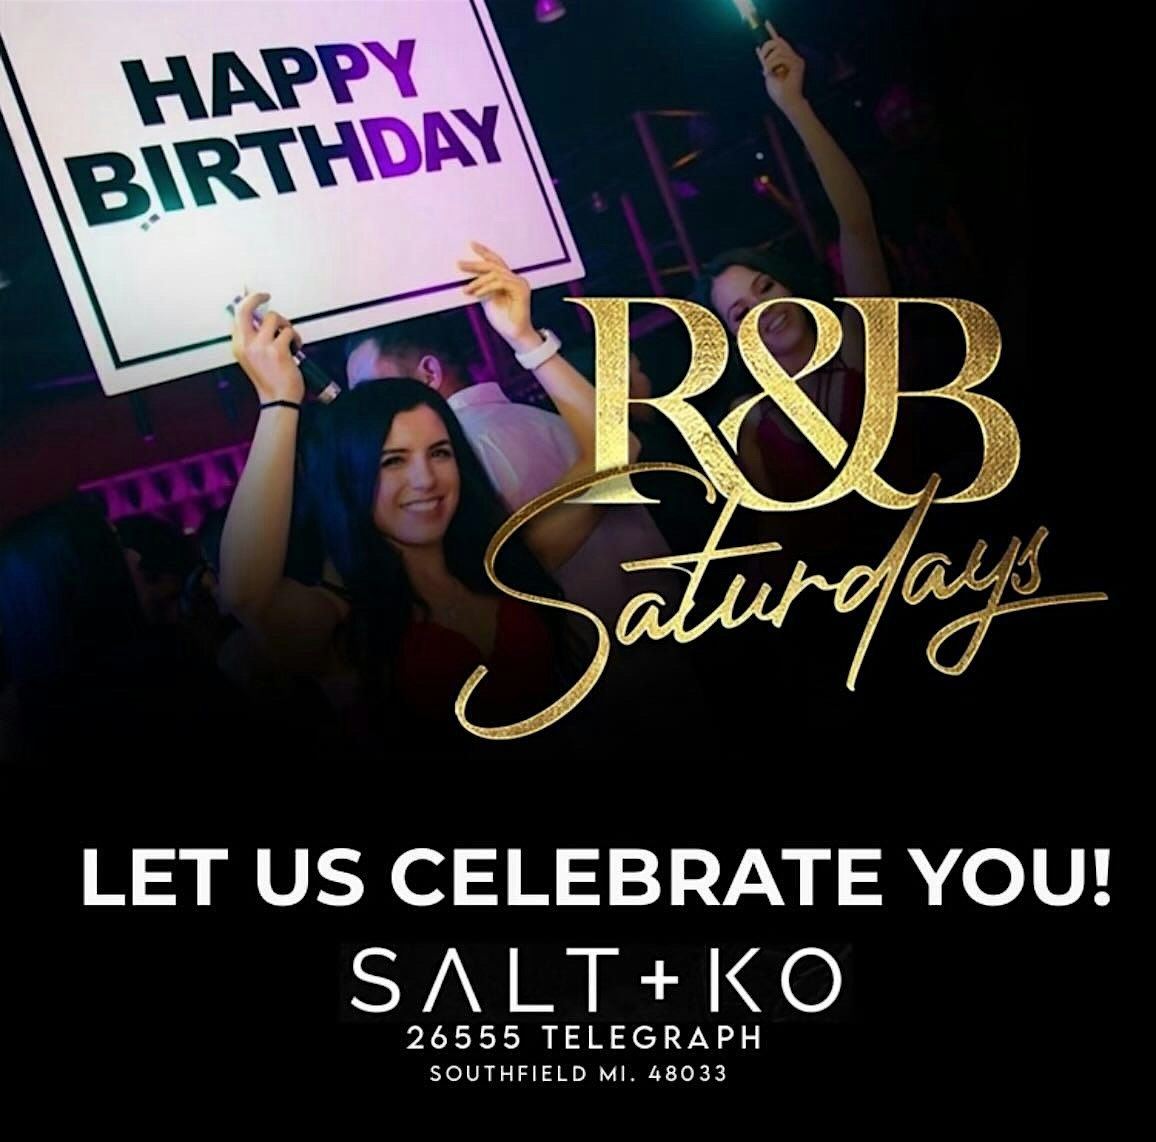 R&B Saturdays at Salt+ KO